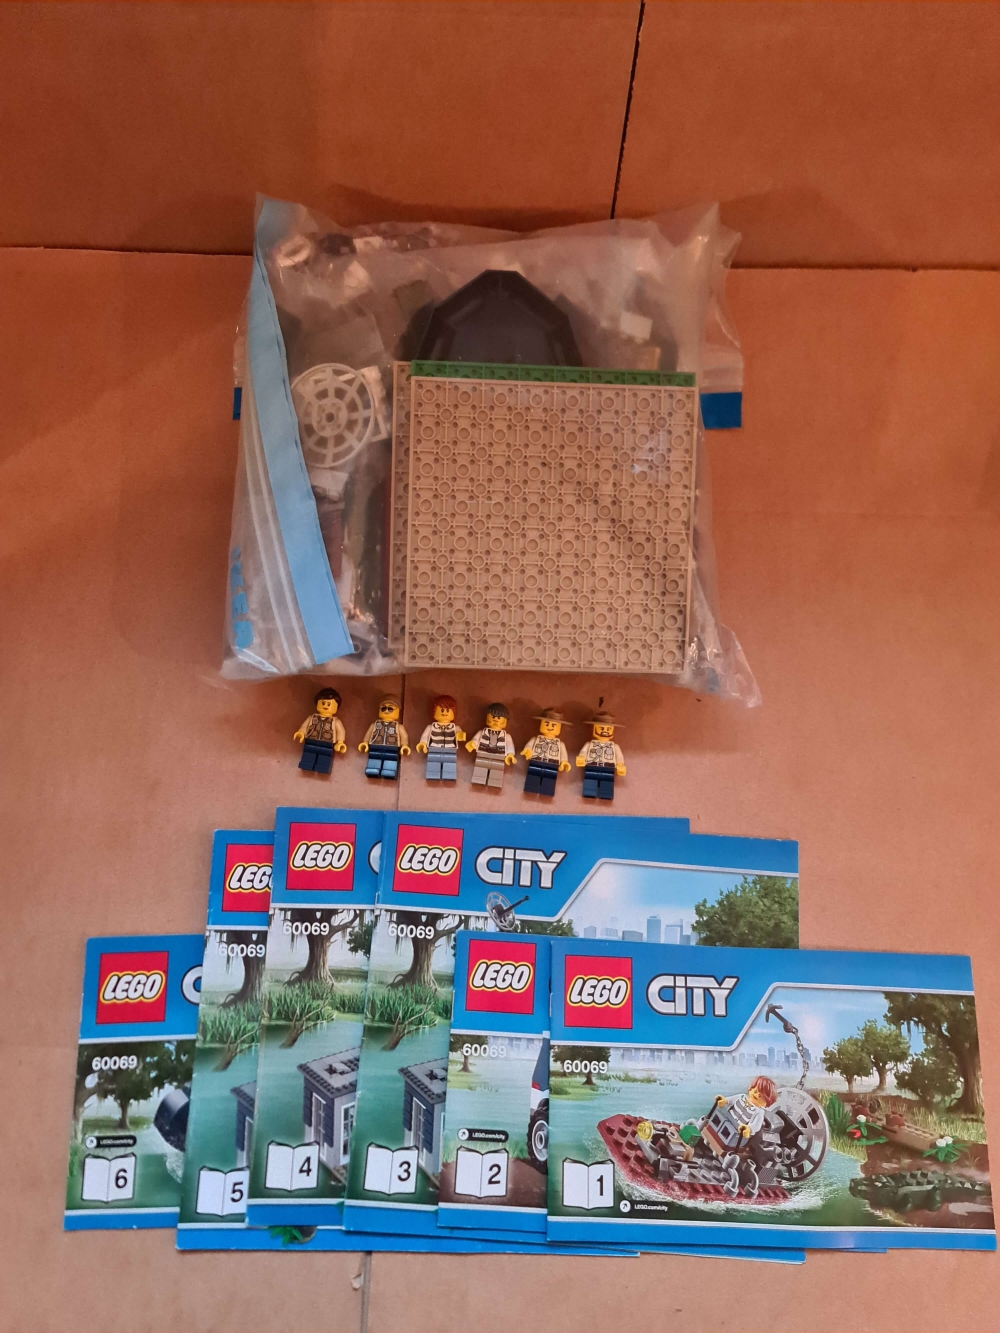 Sett 60068 fra Lego City serien.

Meget pent. Komplett med manualer.